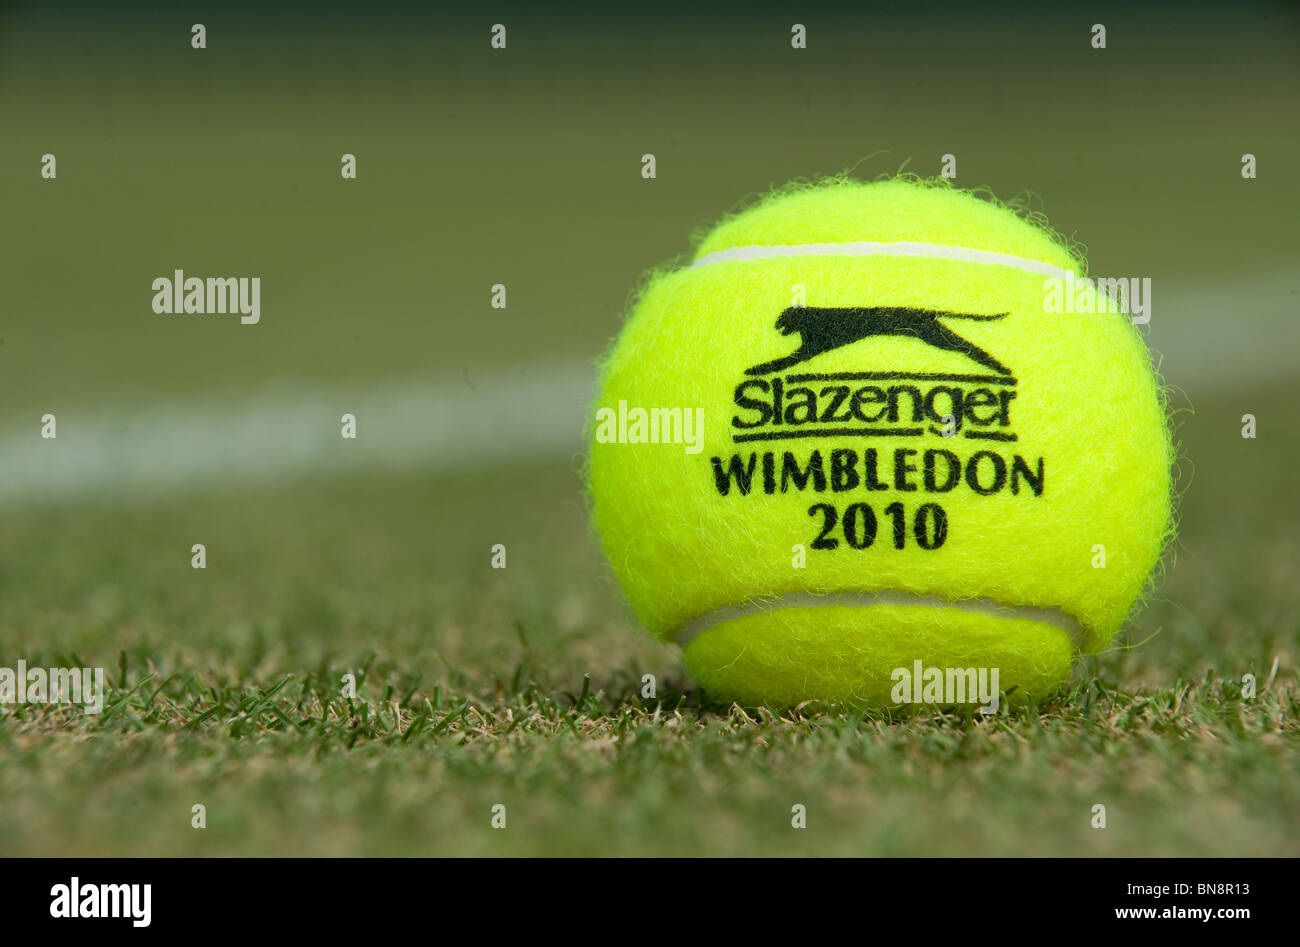 Wimbledon 2010 Slazenger tennis ball sits on a grass court during the Wimbledon Tennis Championships 2010  Stock Photo